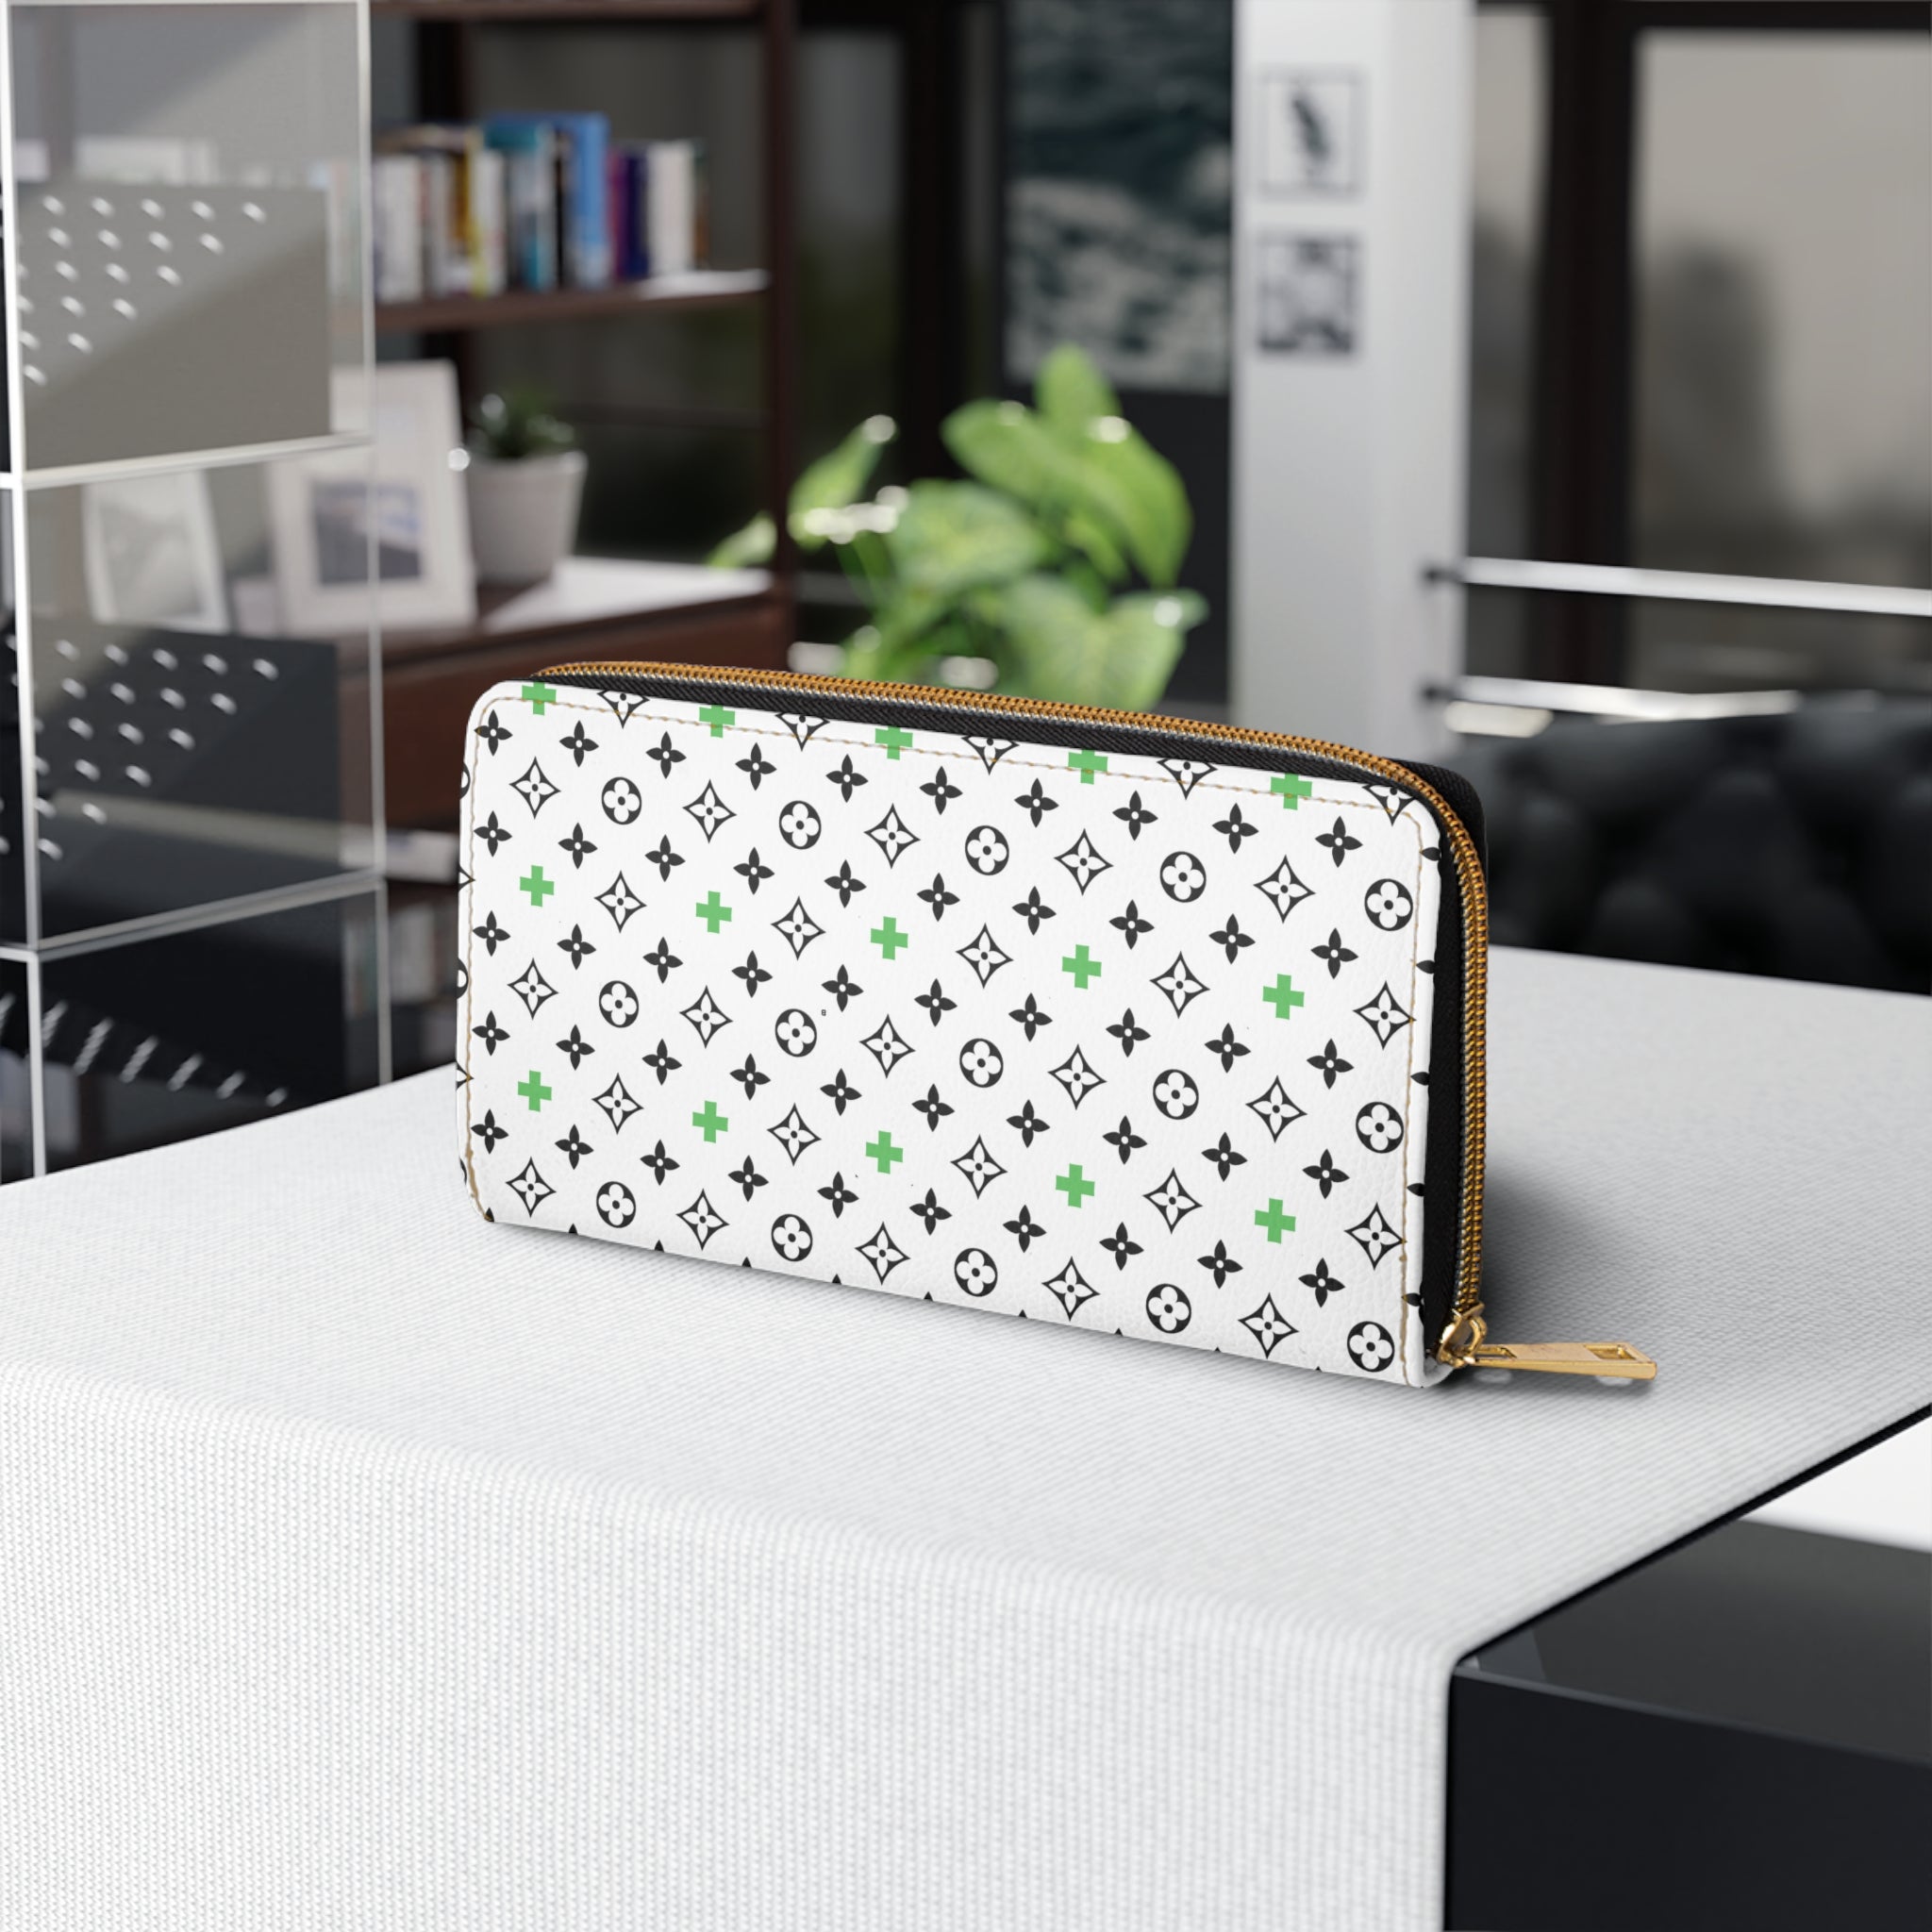 B+A Design in Green Women's Wallet, Zipper Pouch, Coin Purse, Zippered Wallet, Cute Purse